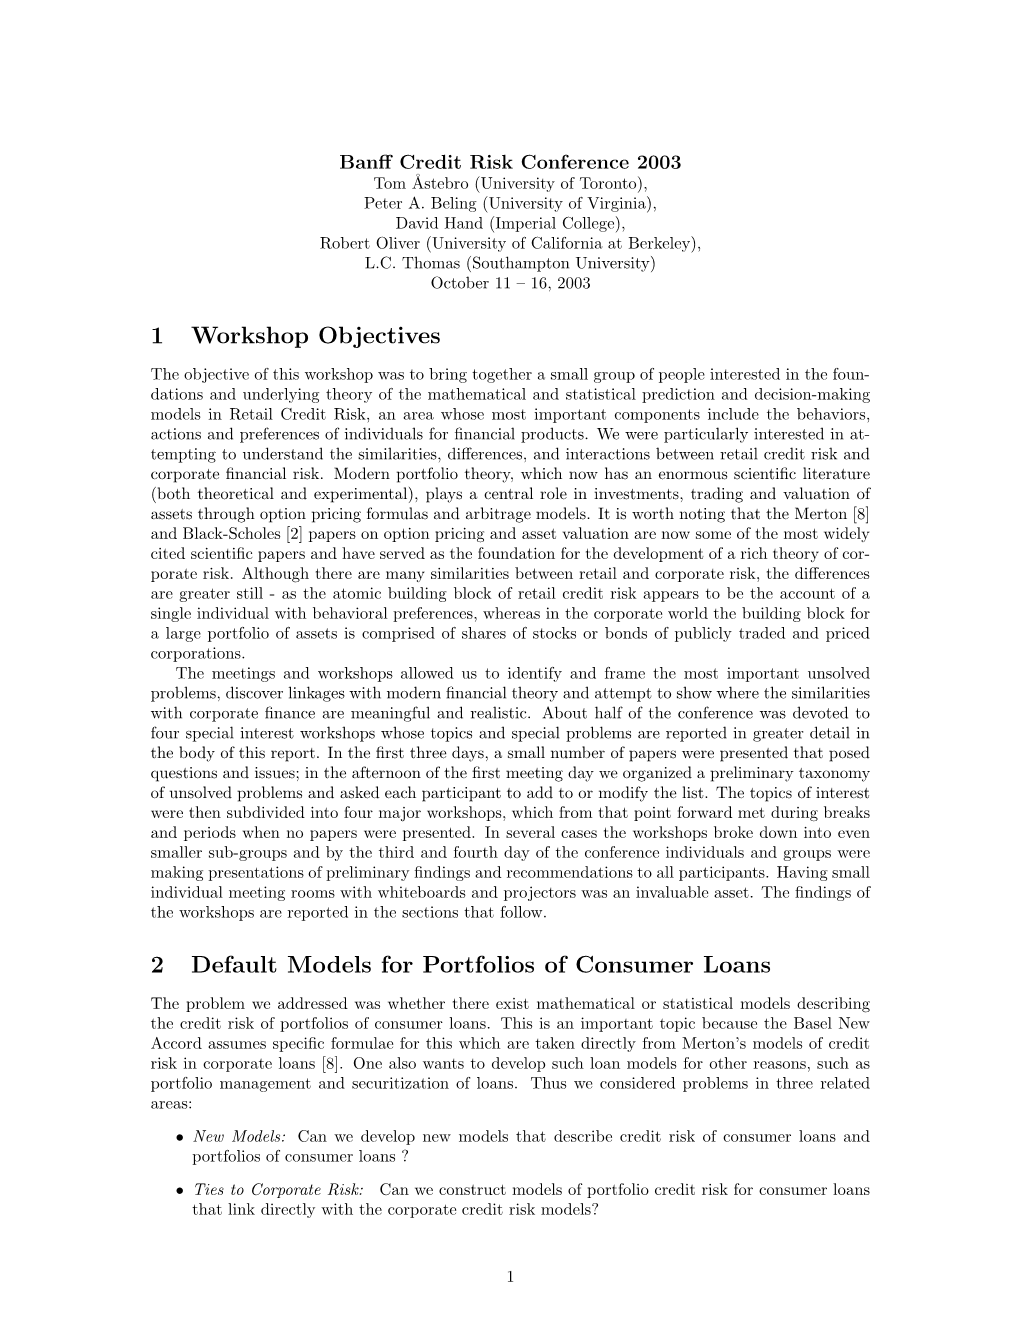 1 Workshop Objectives 2 Default Models for Portfolios of Consumer